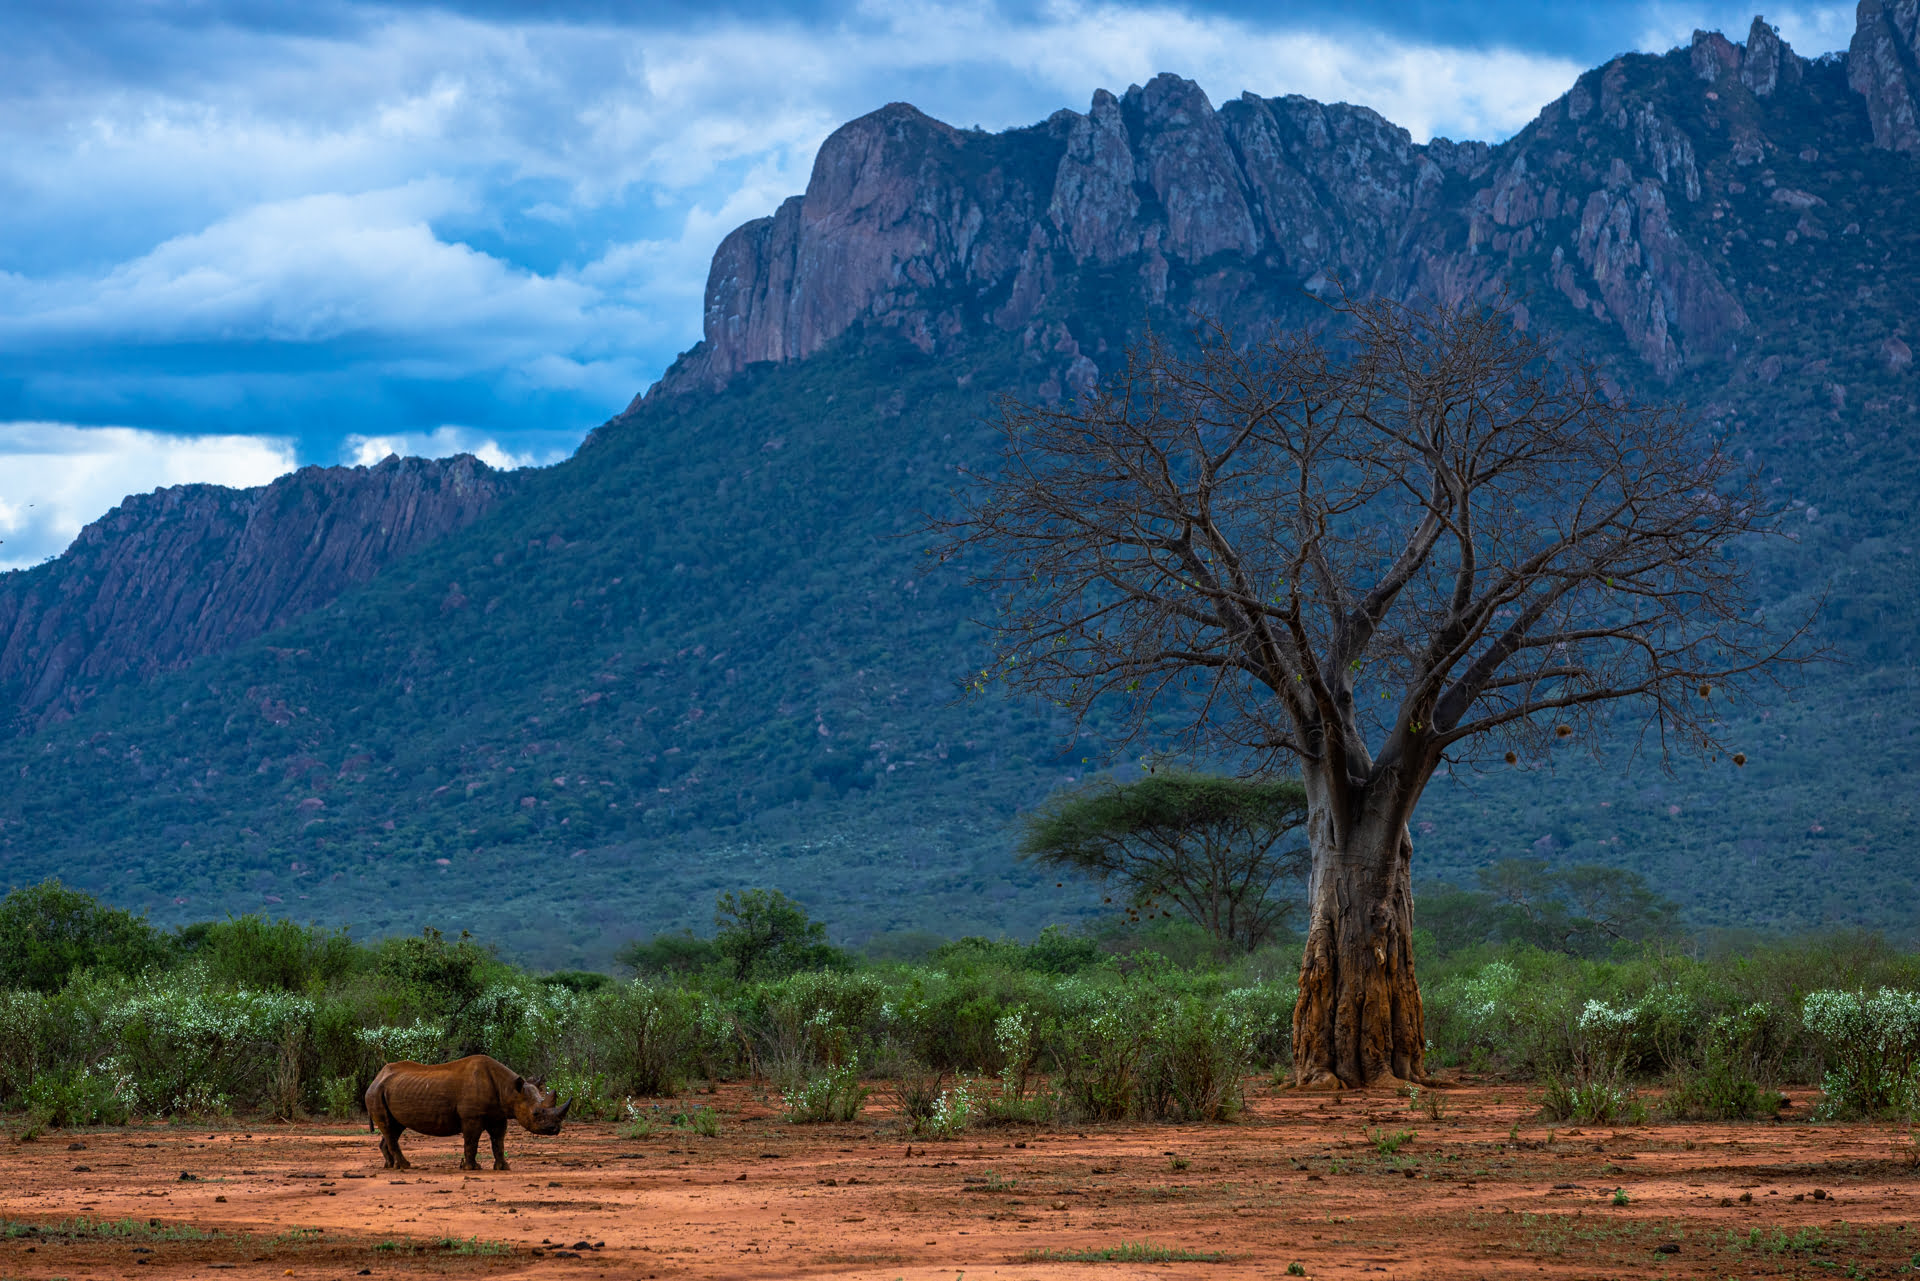 Un Rhinocéros noir se repose dans la réserve de Tsavo ouest, Kenya - A black rhinoceros rests in the Tsavo West Game Reserve, Kenya / Diceros bicornis